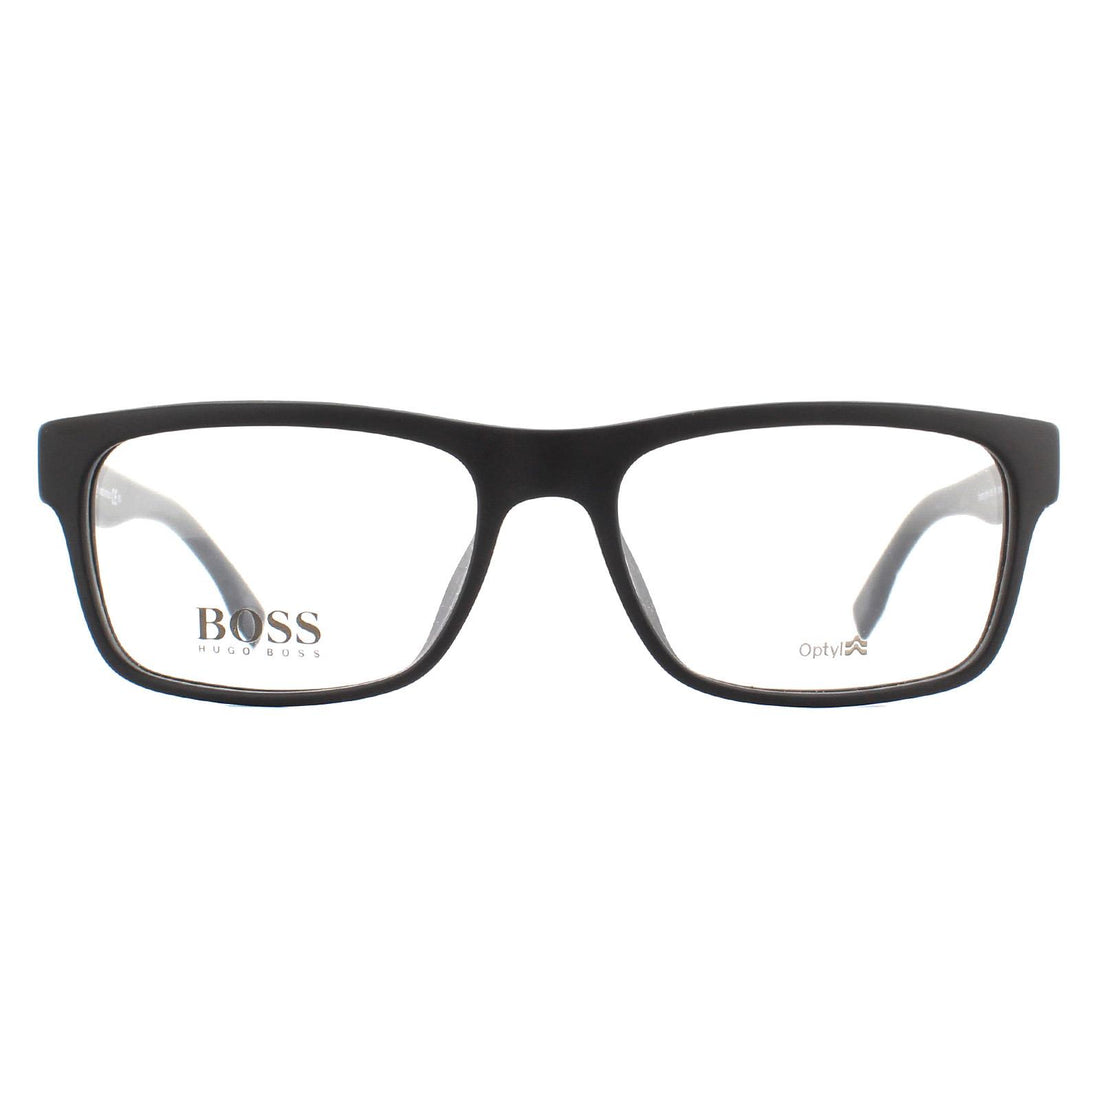 Hugo Boss BOSS 0729 Glasses Frames Matte Black